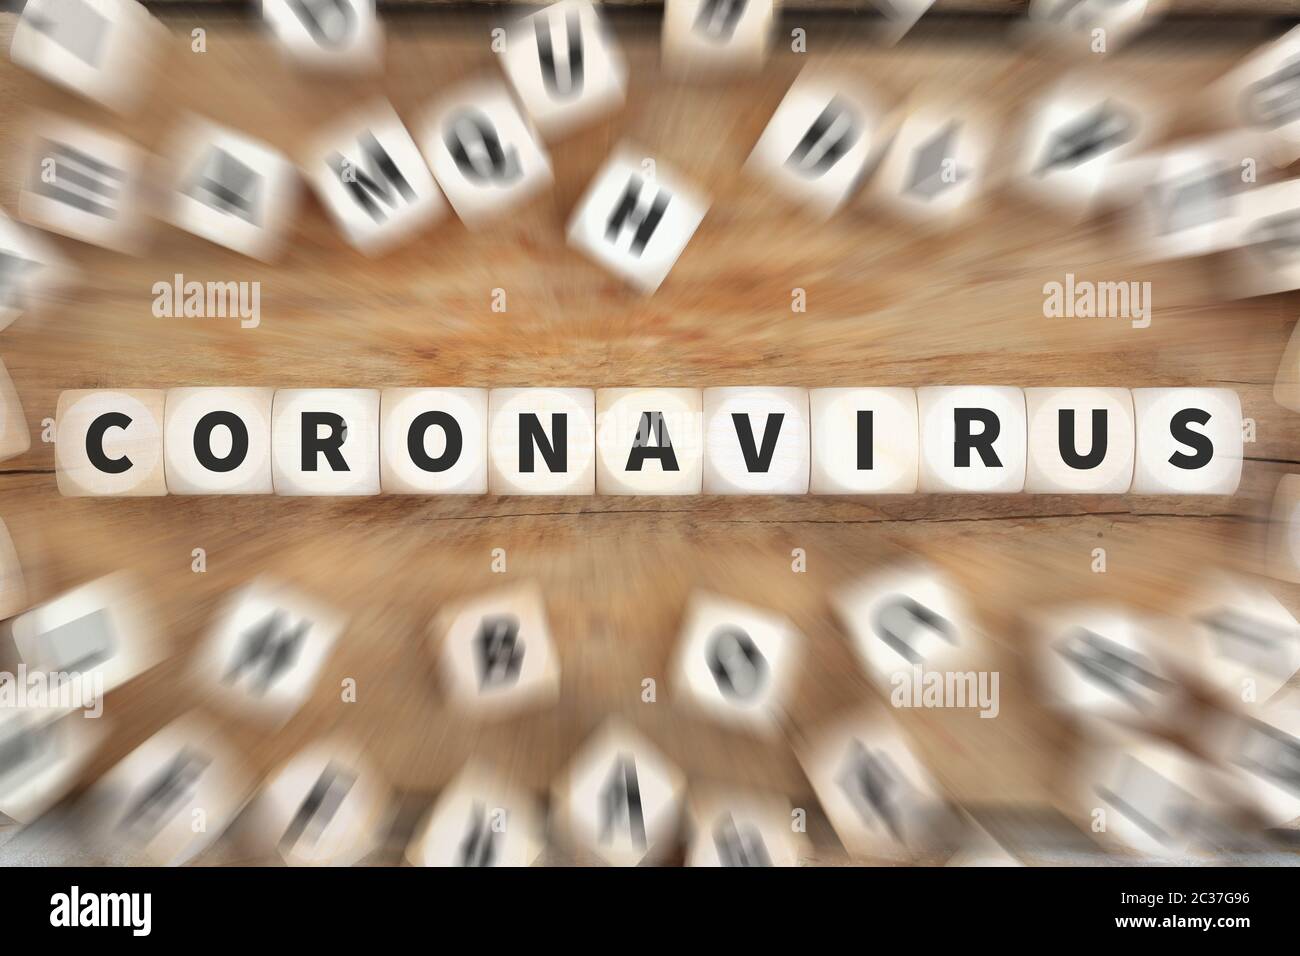 Coronavirus Corona virus disease illness healthy health dice concept idea Stock Photo